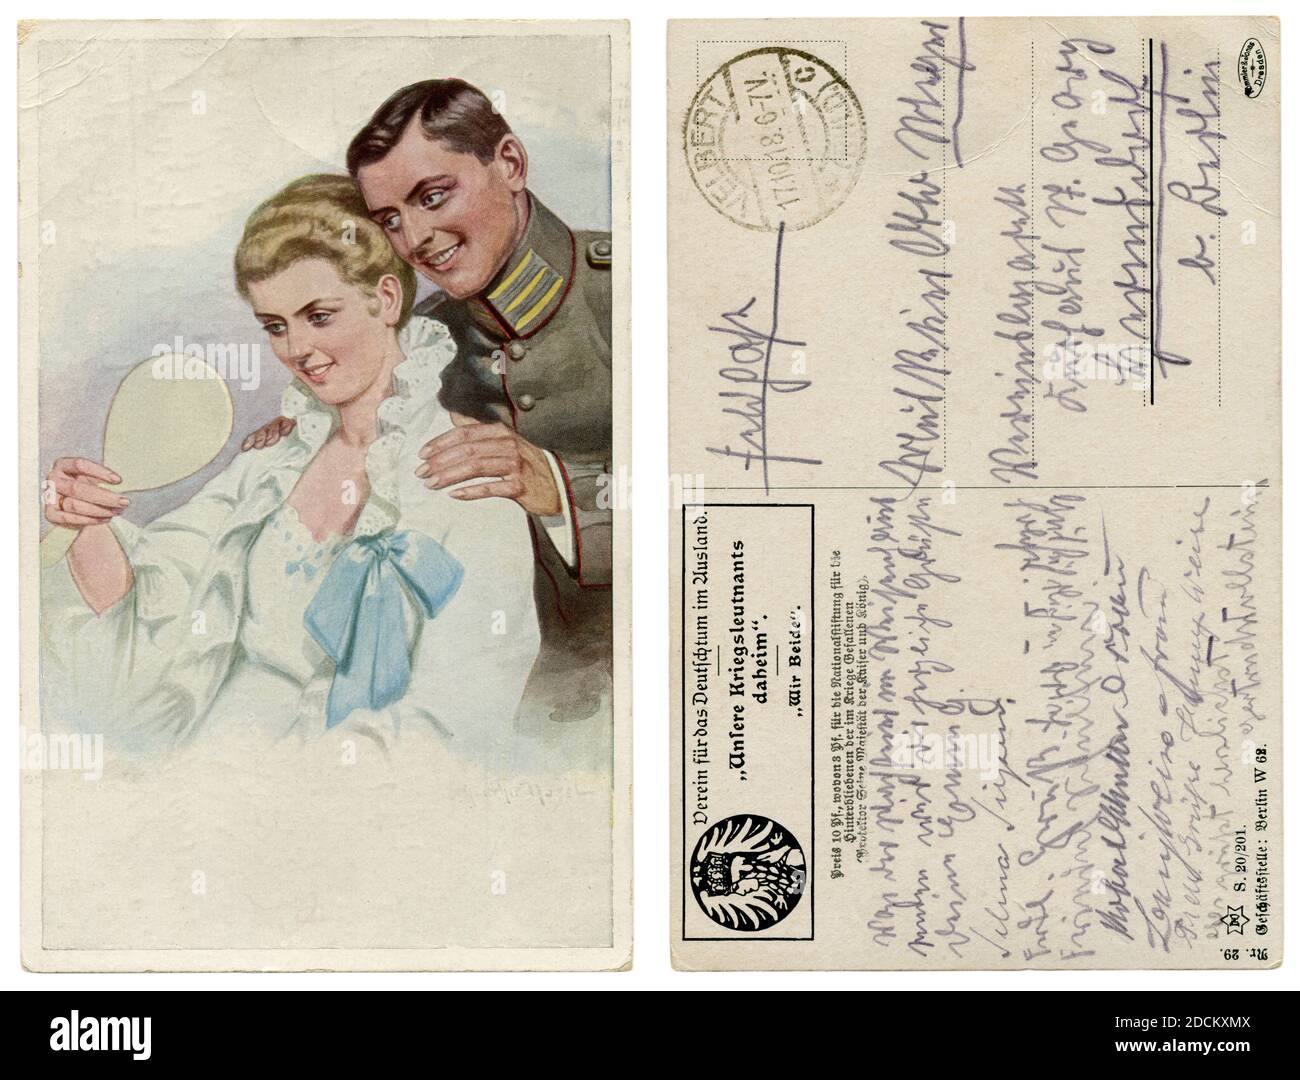 Cartolina storica tedesca: Un uomo in uniforme militare ammira la sua bella moglie. Una signora in una notte guarda nello specchio. Prima guerra mondiale, 1914-18 Foto Stock